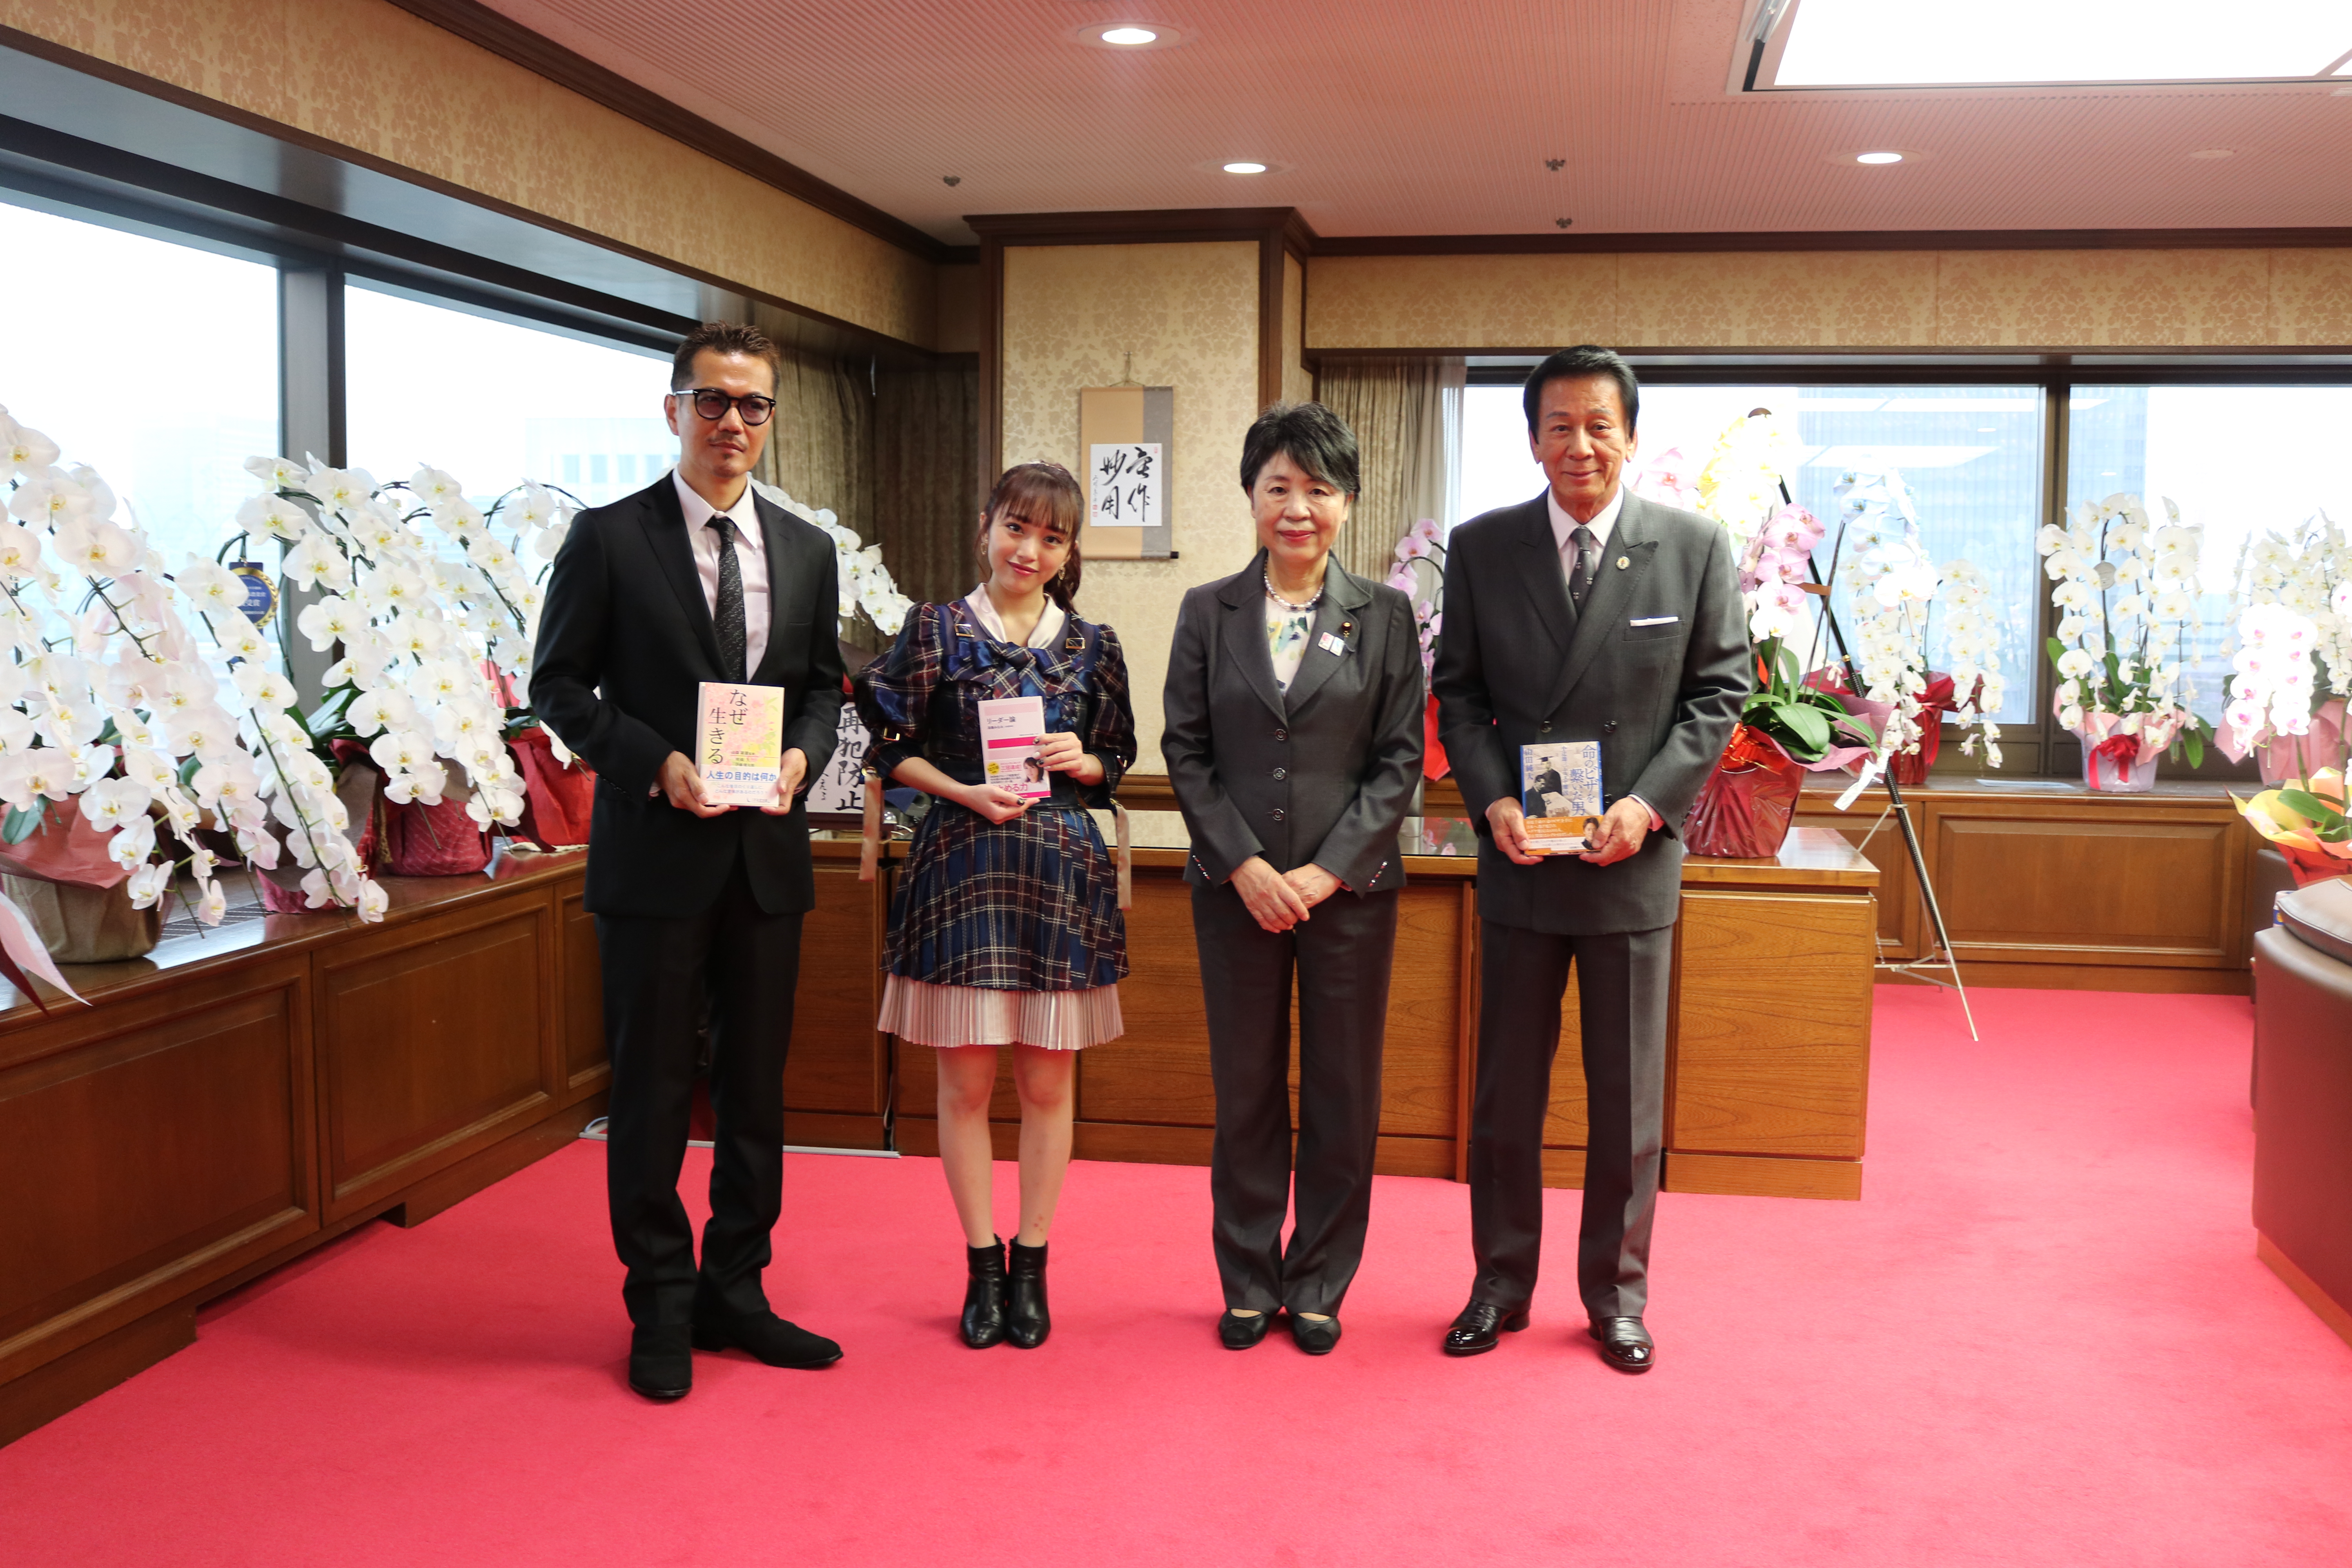 上川陽子法務大臣が，「読書の日２０２０」企画に関し，杉特別矯正監等の表敬を受けました（令和２年１０月２３日）。